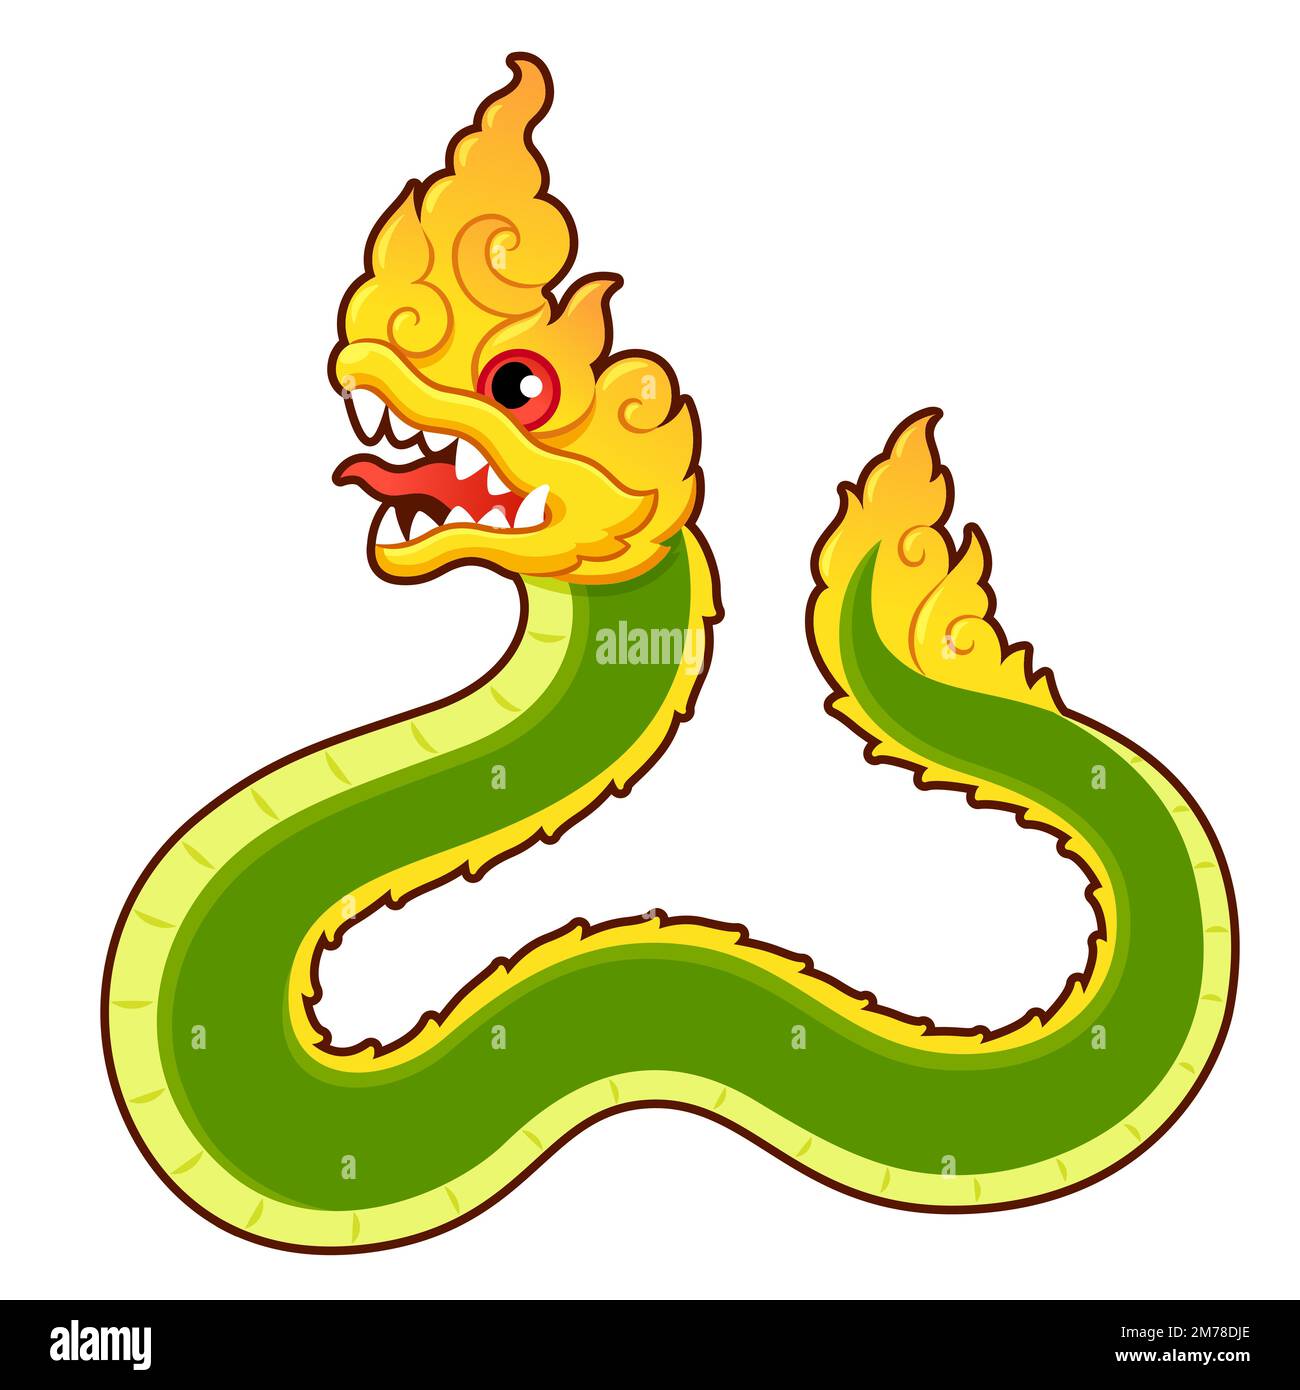 Thai Naga, legendäre Drachenschlange. Zeichentrickzeichnung, Vektorgrafik-Illustration. Stock Vektor